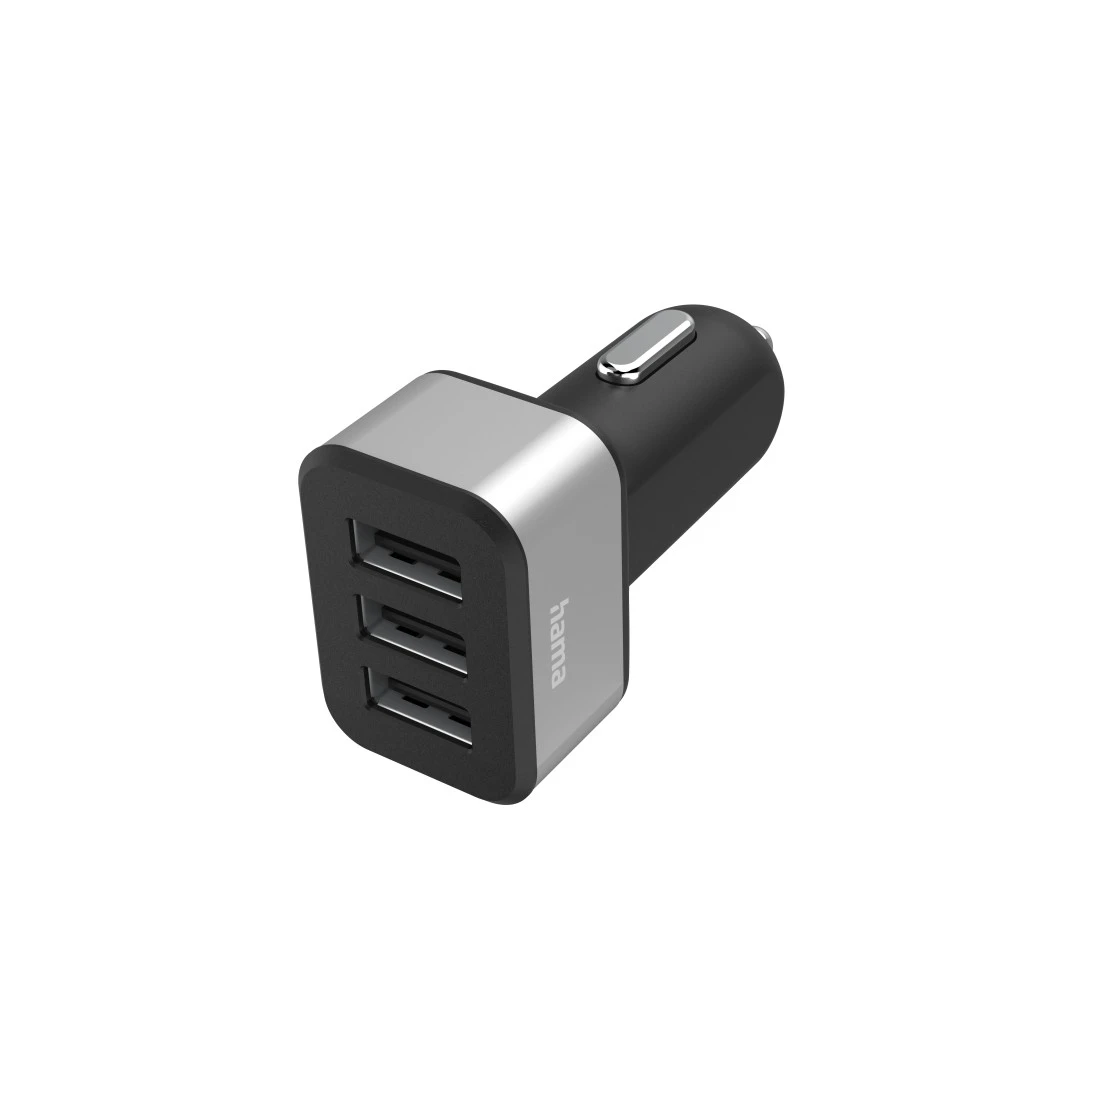 Chargeur USB triple pr all.-cigares, adapt. de chrge pr voit., 12V/24V